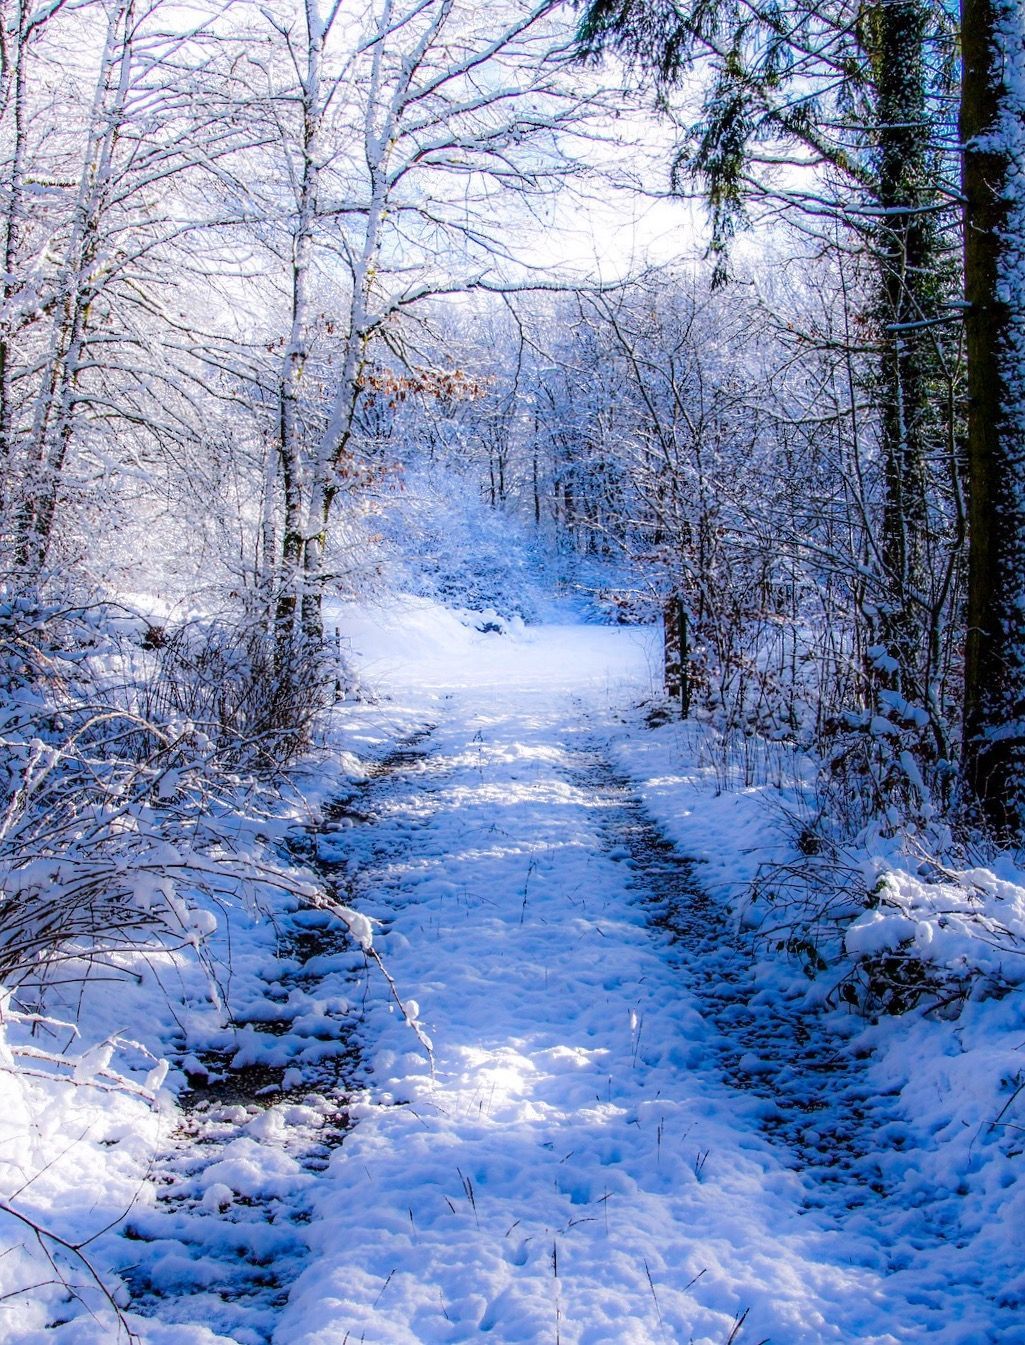 Winter Wonderland - Winter Wonderland -   15 beauty Pictures wonderland ideas